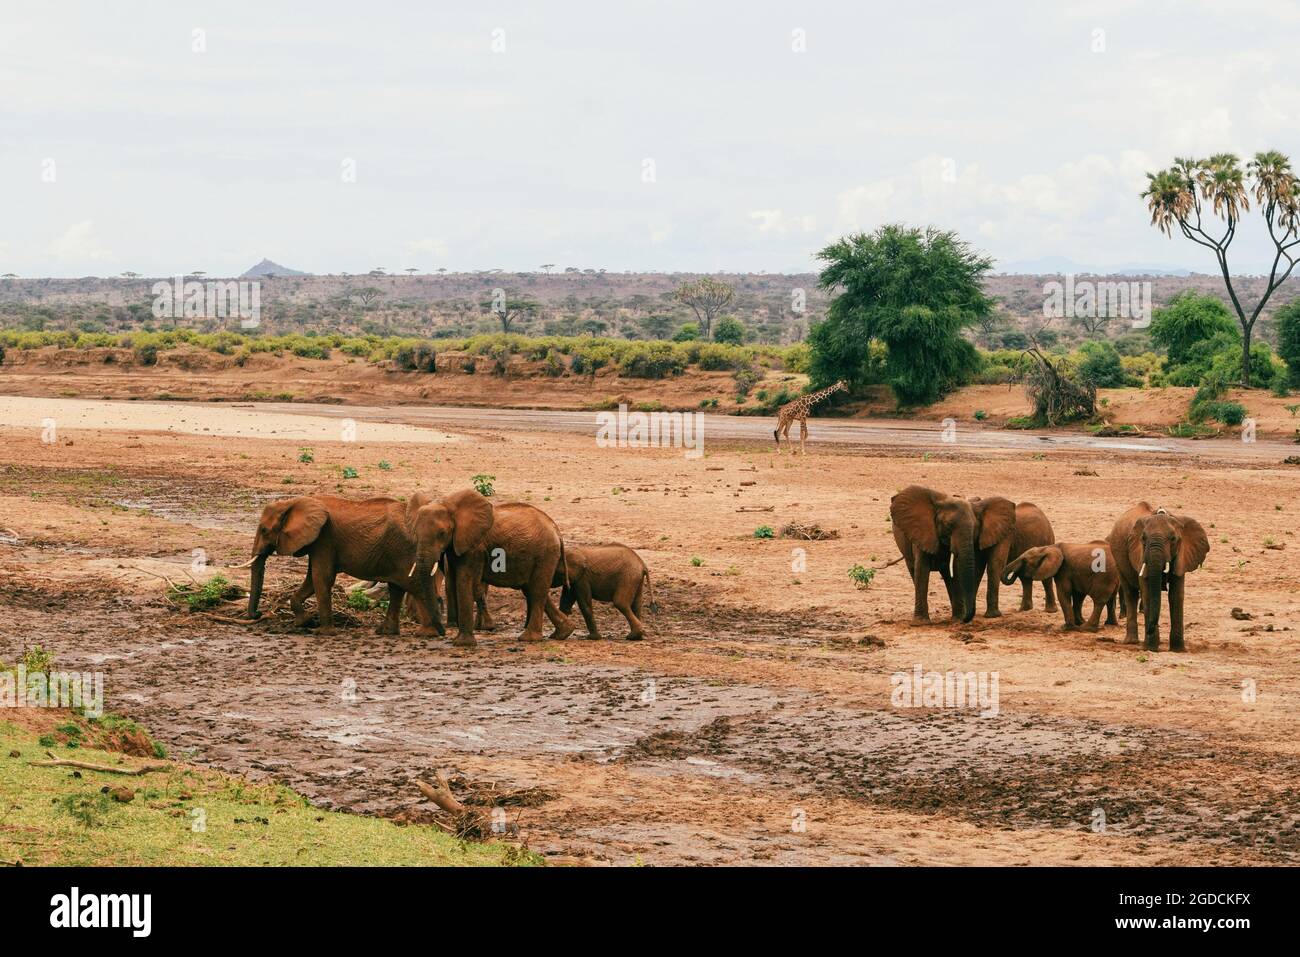 Eine Herde afrikanischer Elefanten - Loxodonta Africana gräbt im Samburu National Reserve, Kenia, nach Wasser Stockfoto